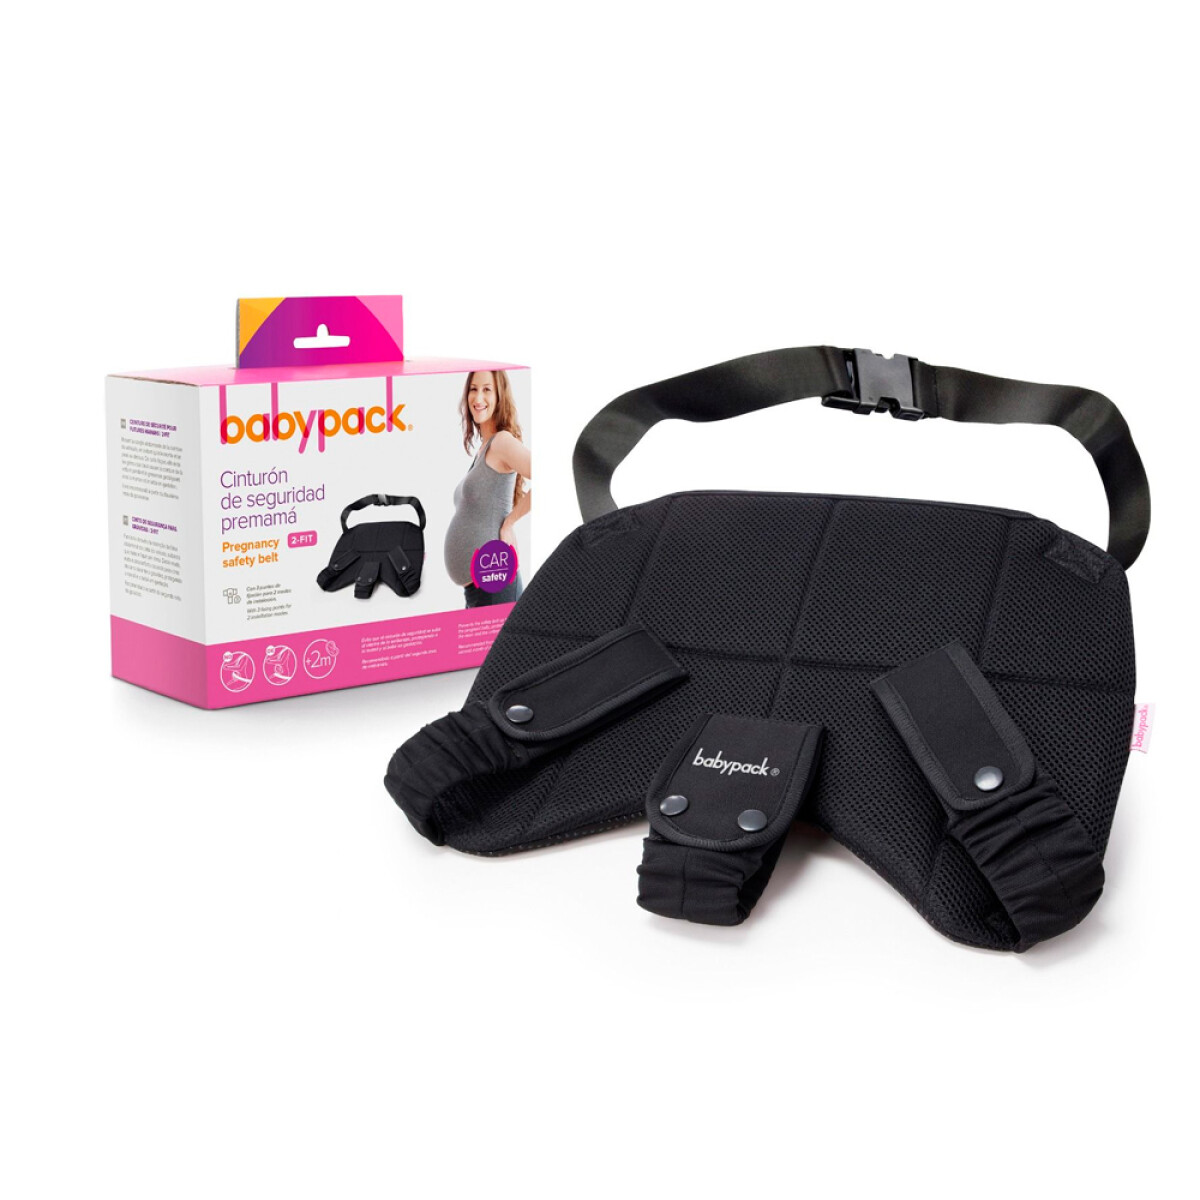 Cinturón de Seguridad Babypack para Embarazadas - 001 